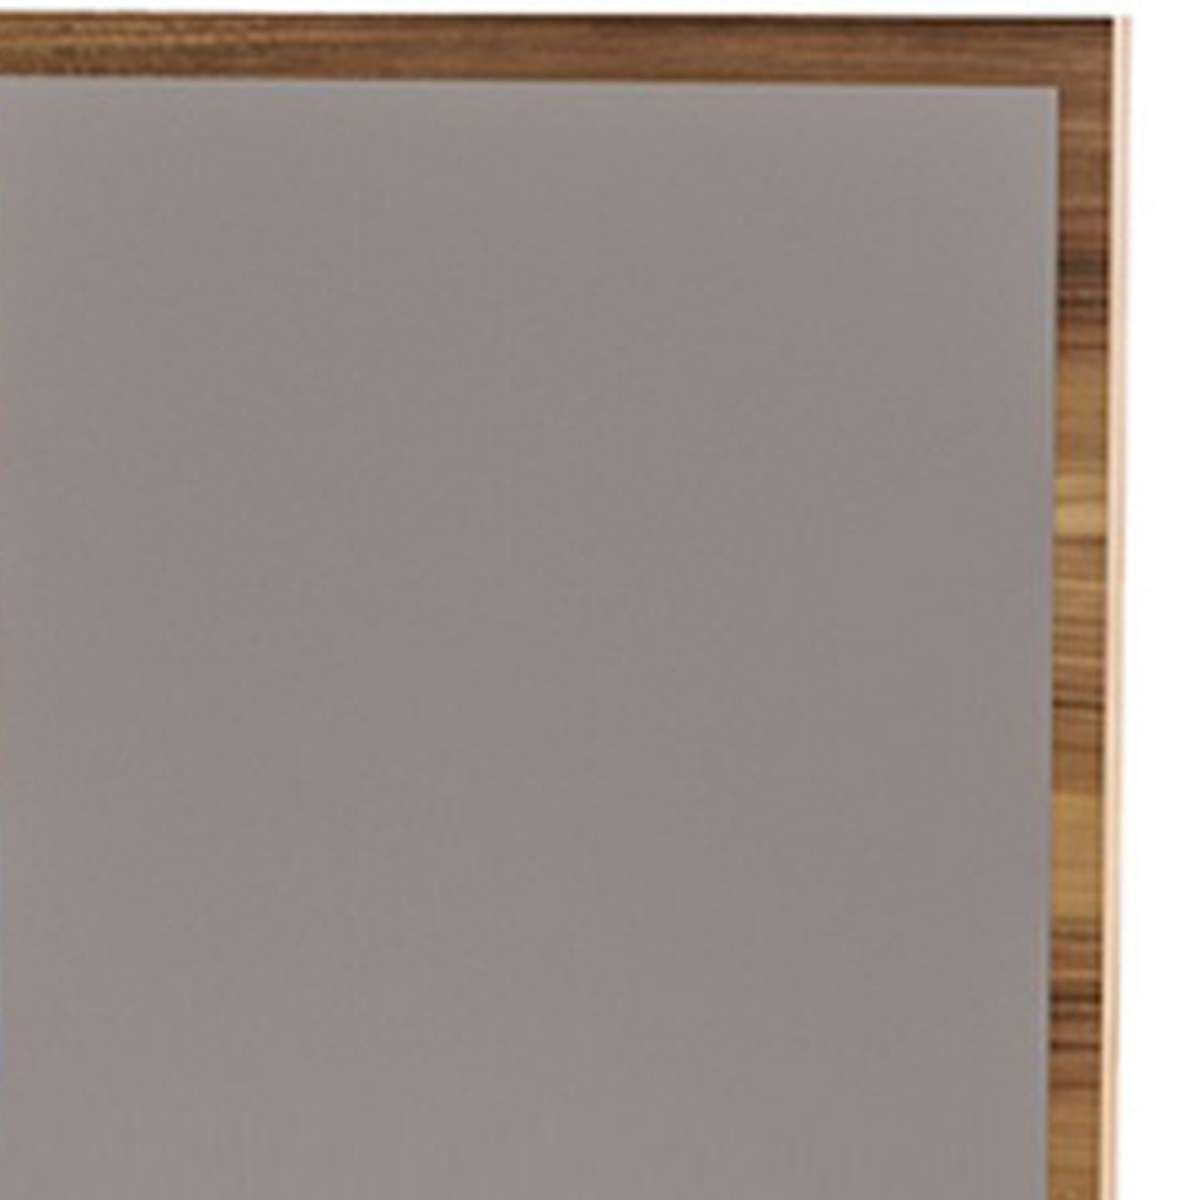 Rectangular Wooden Frame Mirror With Grain Details, Oak Brown By Benzara | Mirrors |  Modishstore  - 5